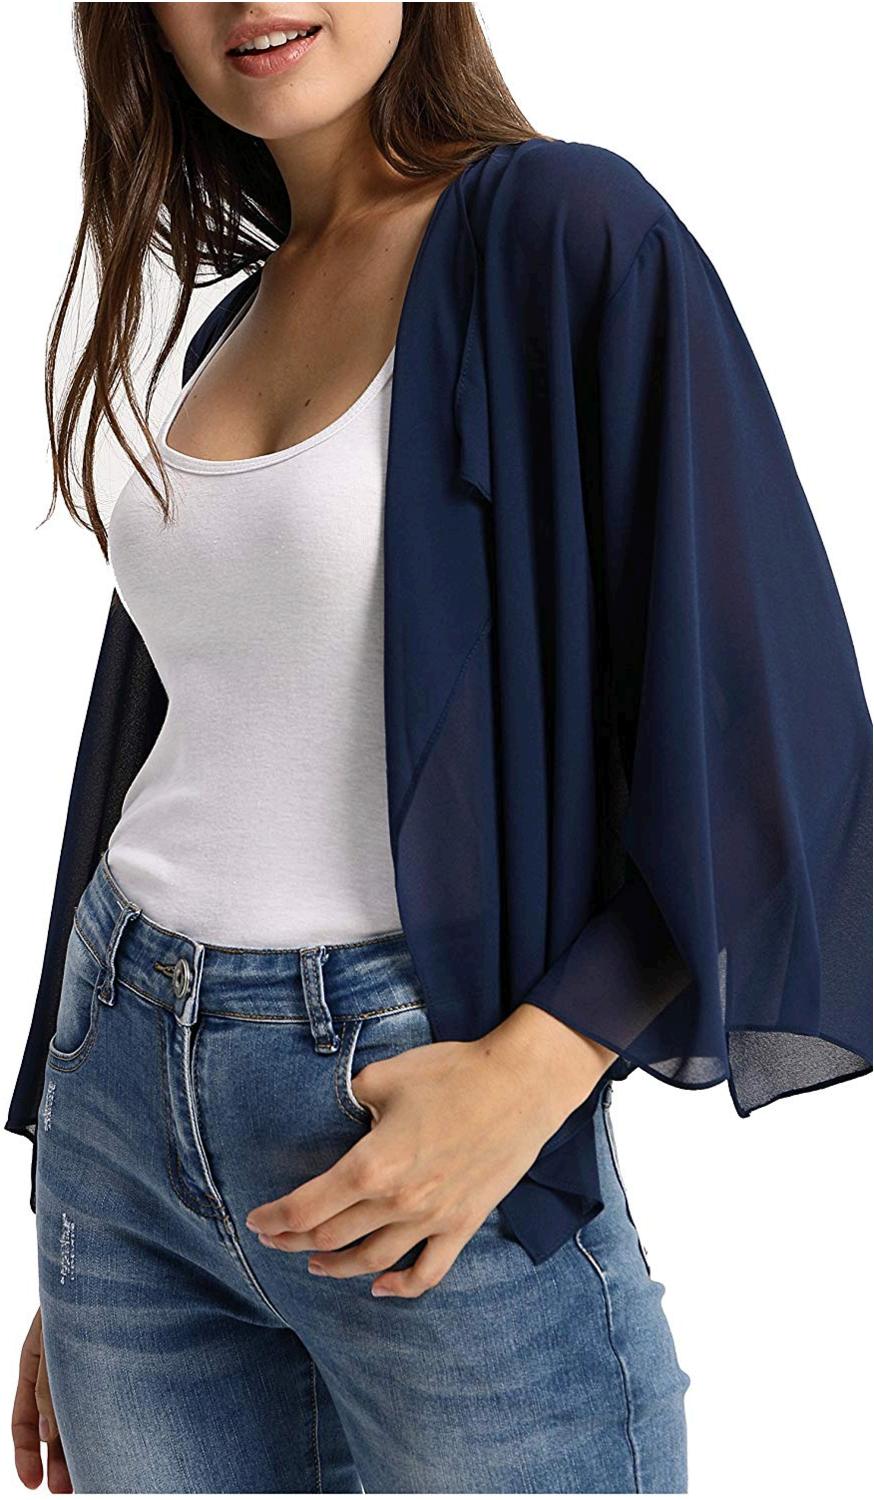 uophørlige udføre Stille og rolig Kimono Cardigan Plus Size Women's Sheer Bolero Shrug Thin, Navy Blue, Size  Large | eBay